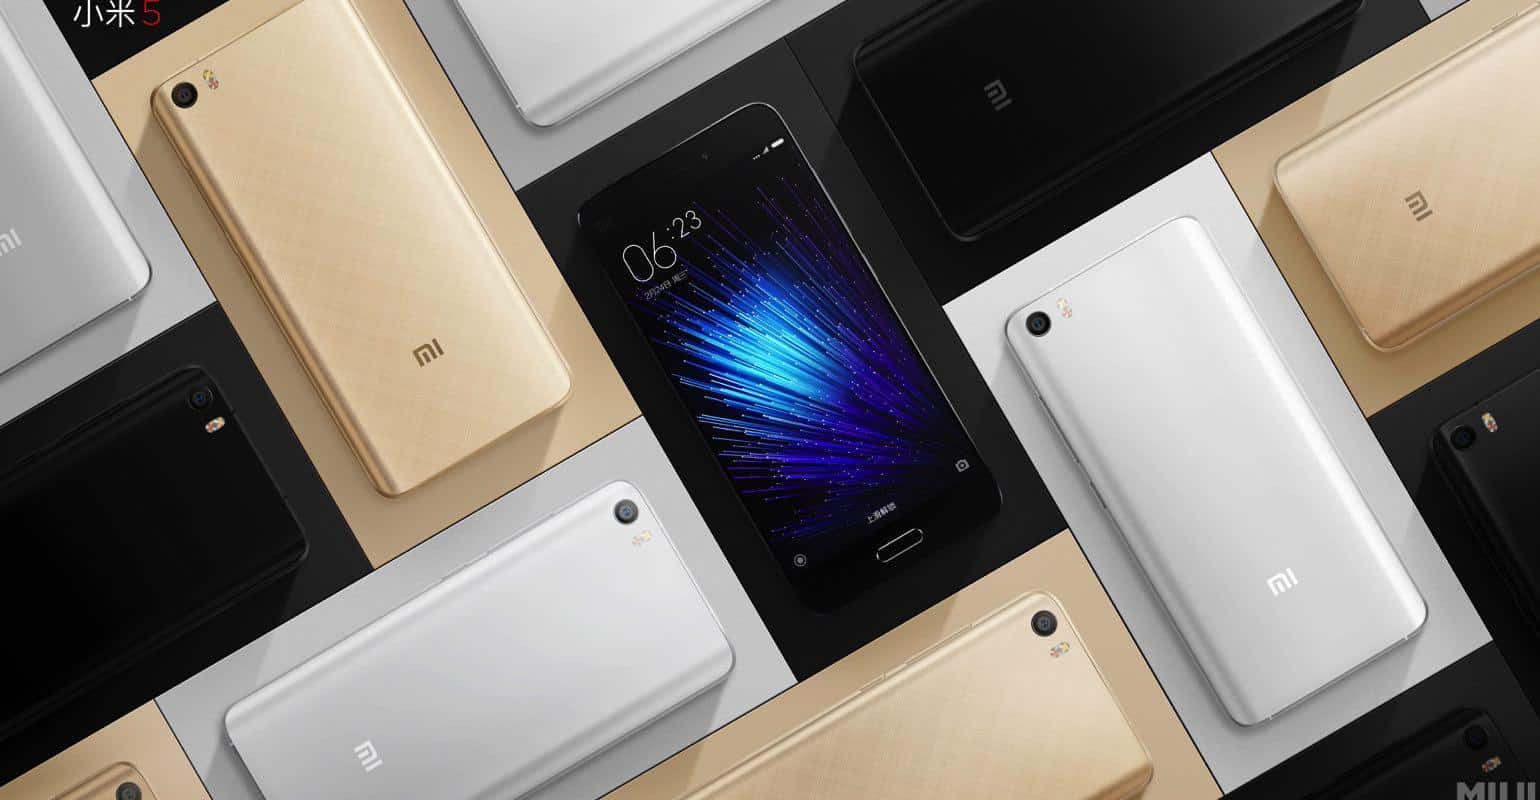 Vraag naar Xiaomi Mi 5 en Mi 4s overtreft verwachtingen